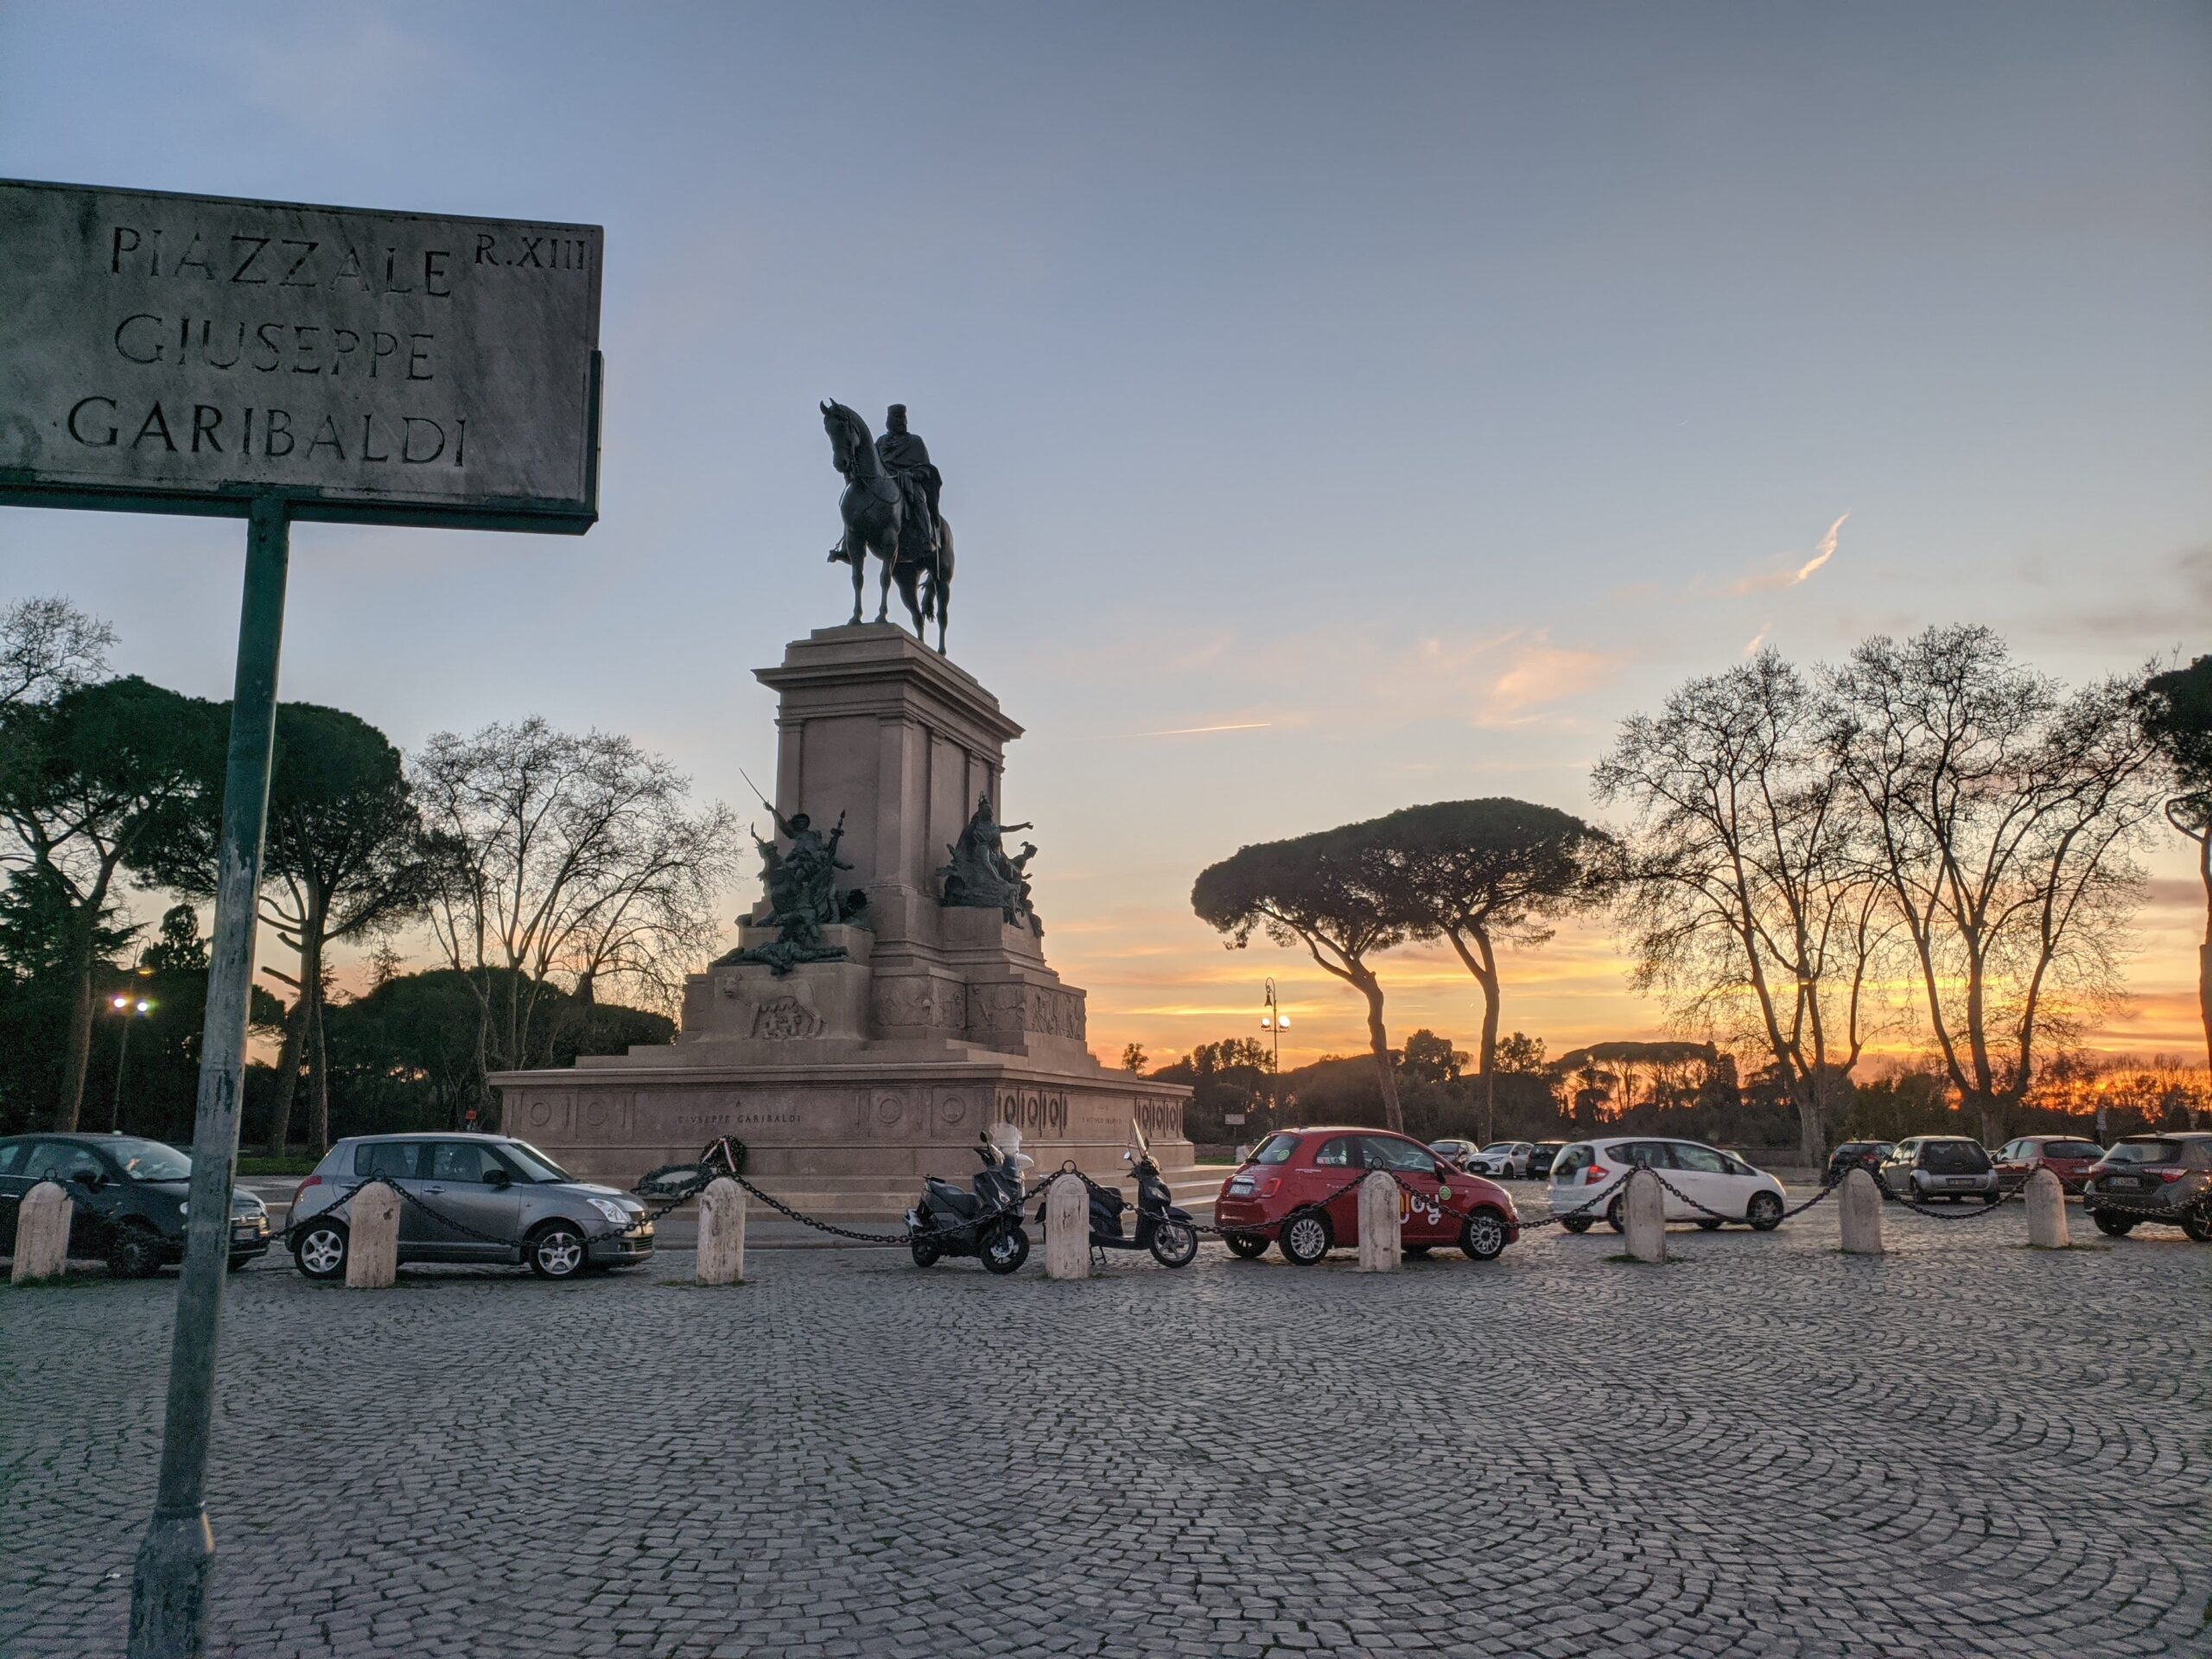 A imagem revela o Piazzale Giuseppe Garibaldi no crepúsculo, com a estátua equestre dominando a cena e o céu dramático ao fundo colorido por tons de laranja e azul do pôr do sol romano, criando um contraste entre o patrimônio histórico e a vida cotidiana moderna.